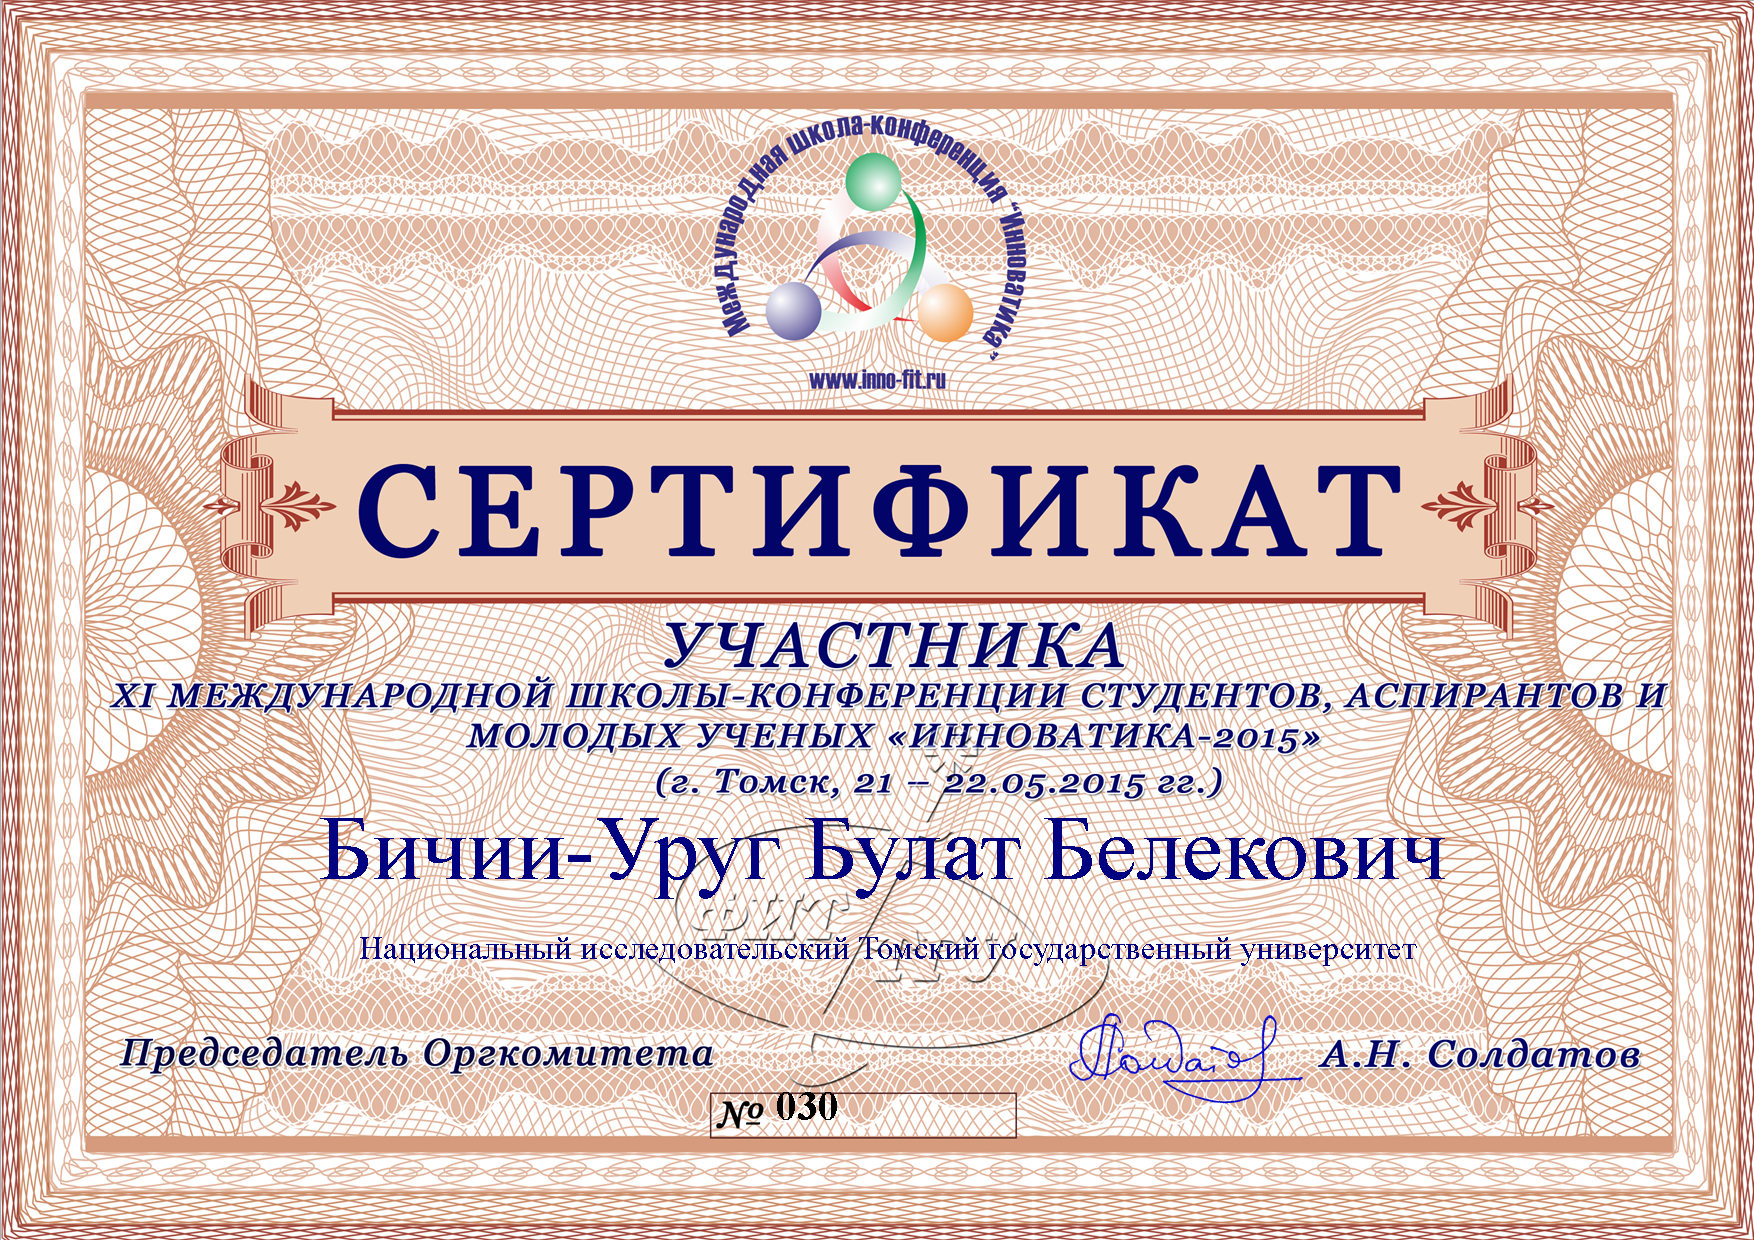 Сертификат Бичии-Уруг Булата